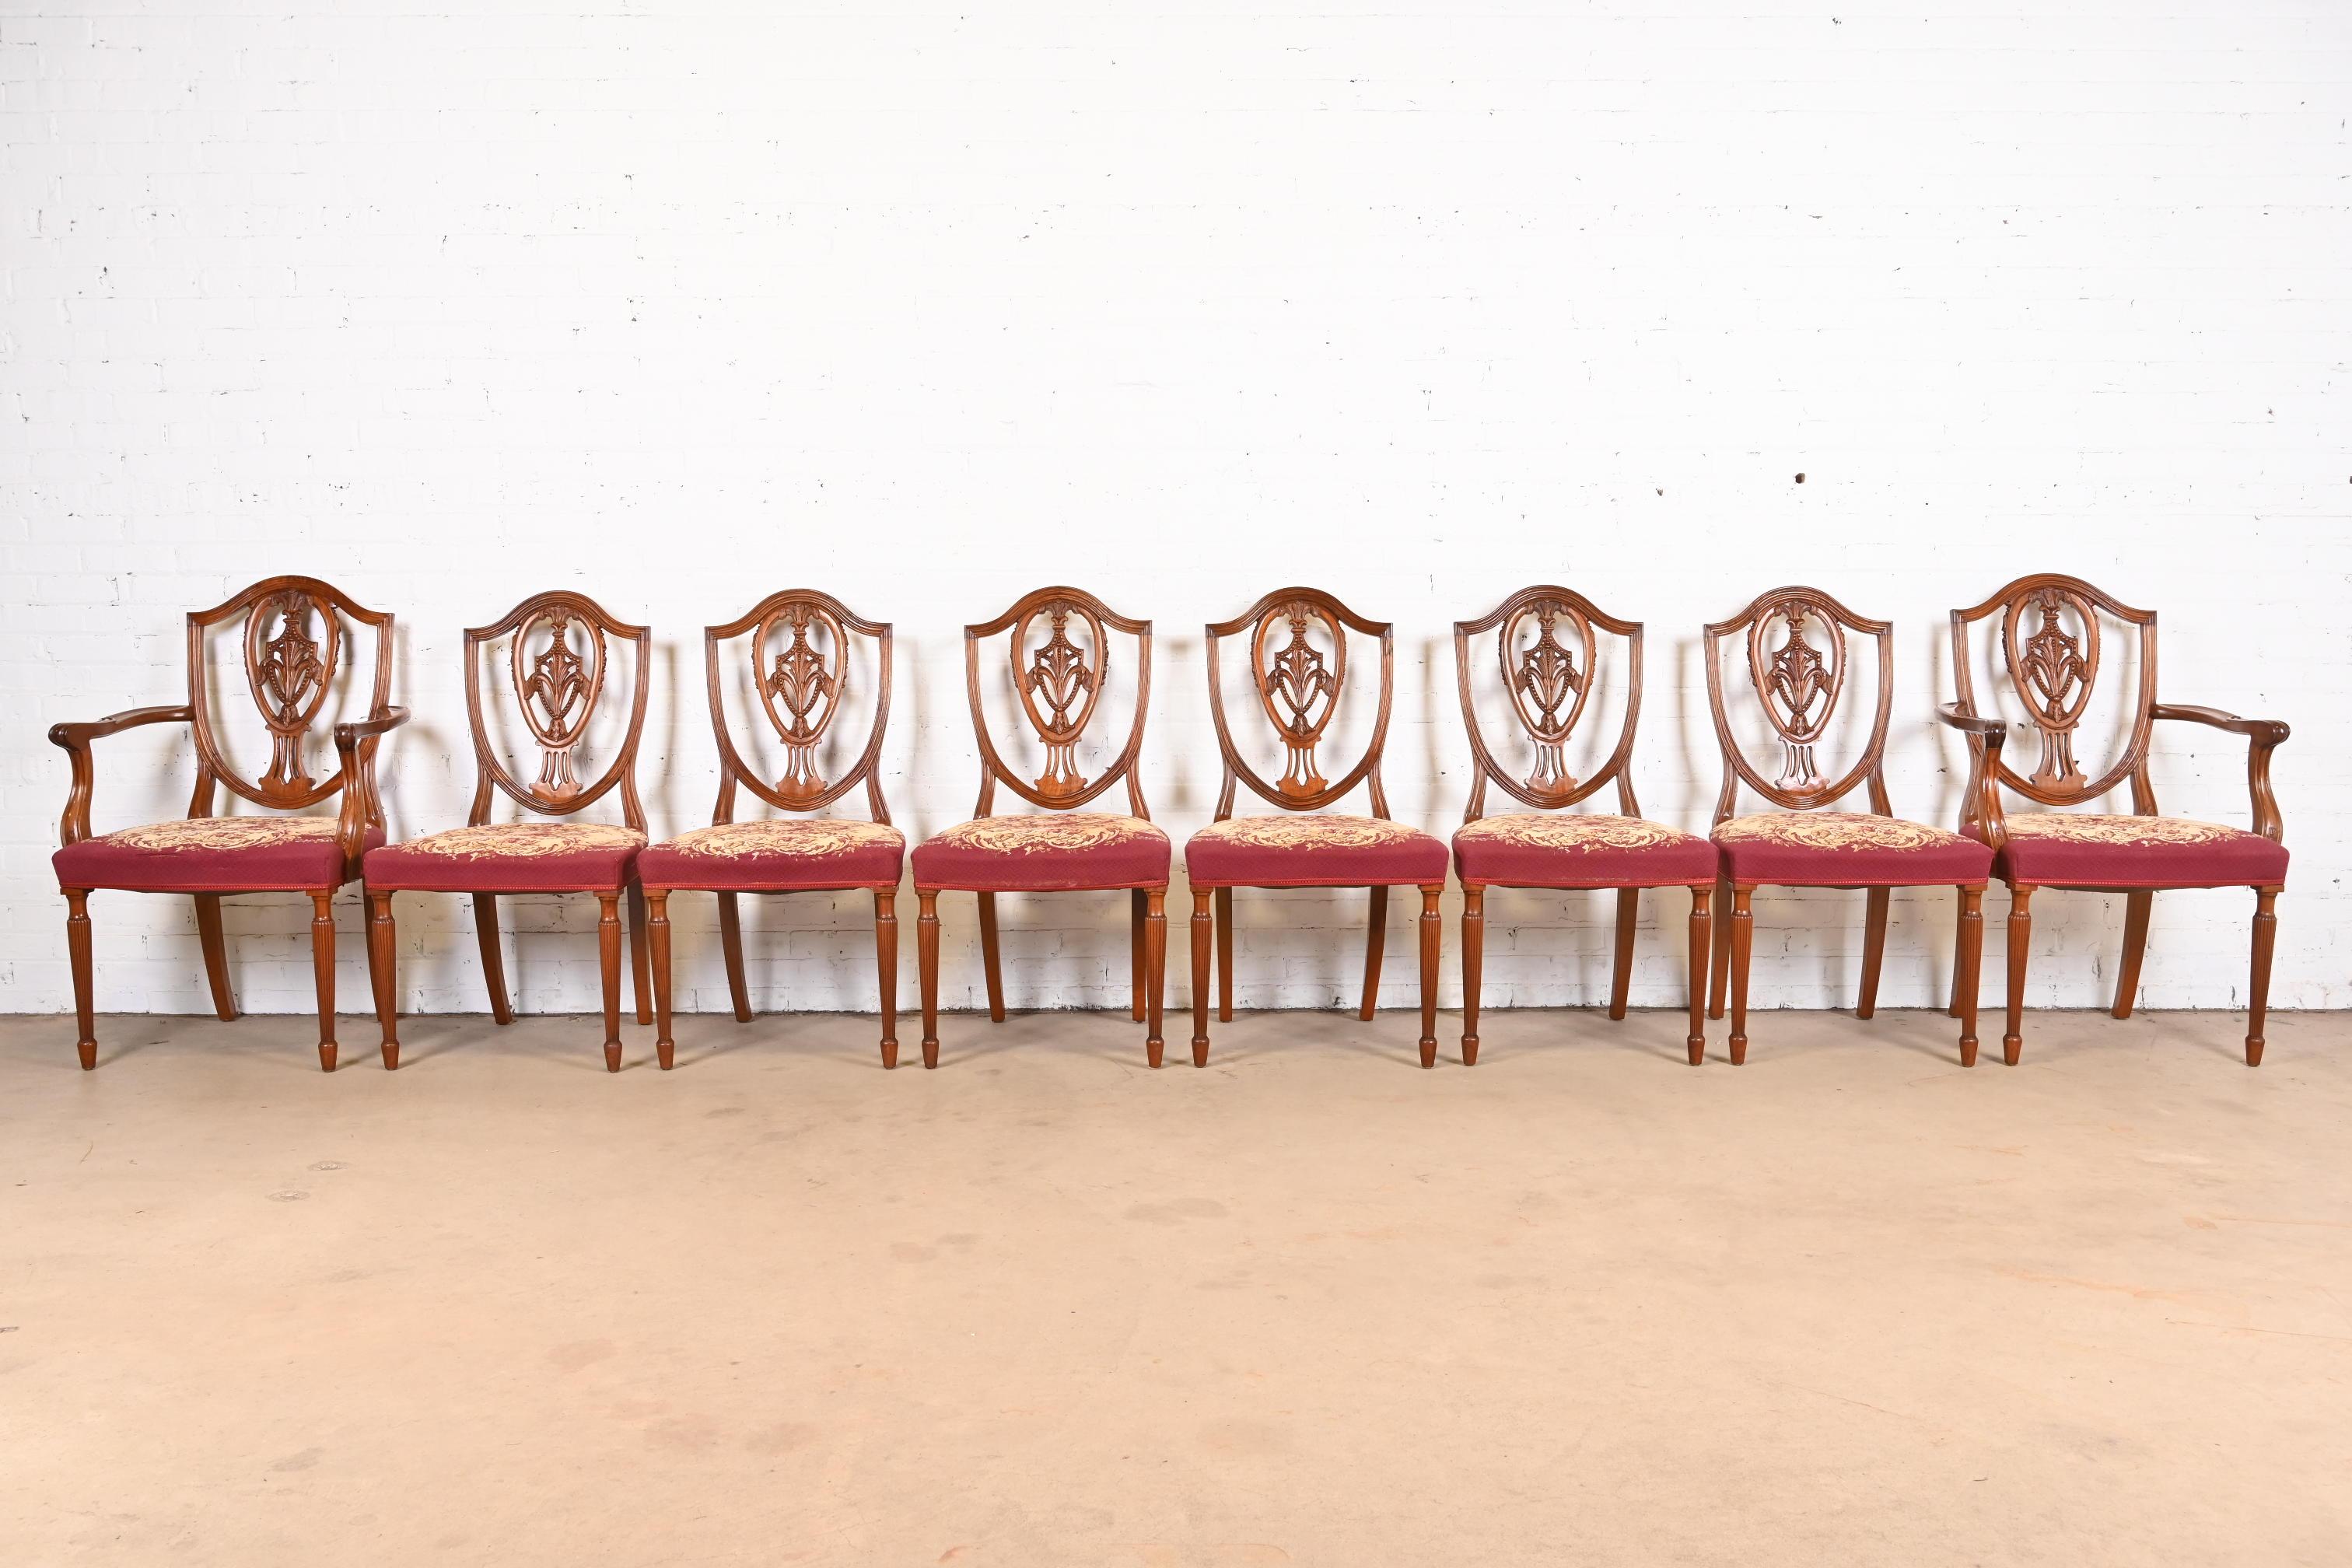 Ein prächtiger Satz von acht Louis XVI- oder georgianischen Stühlen mit Schildrücken

Nach dem Vorbild von Baker Furniture

USA, ca. 1960er Jahre

Mahagoni geschnitzt, mit gepolsterten Sitzen aus Nadelspitze mit